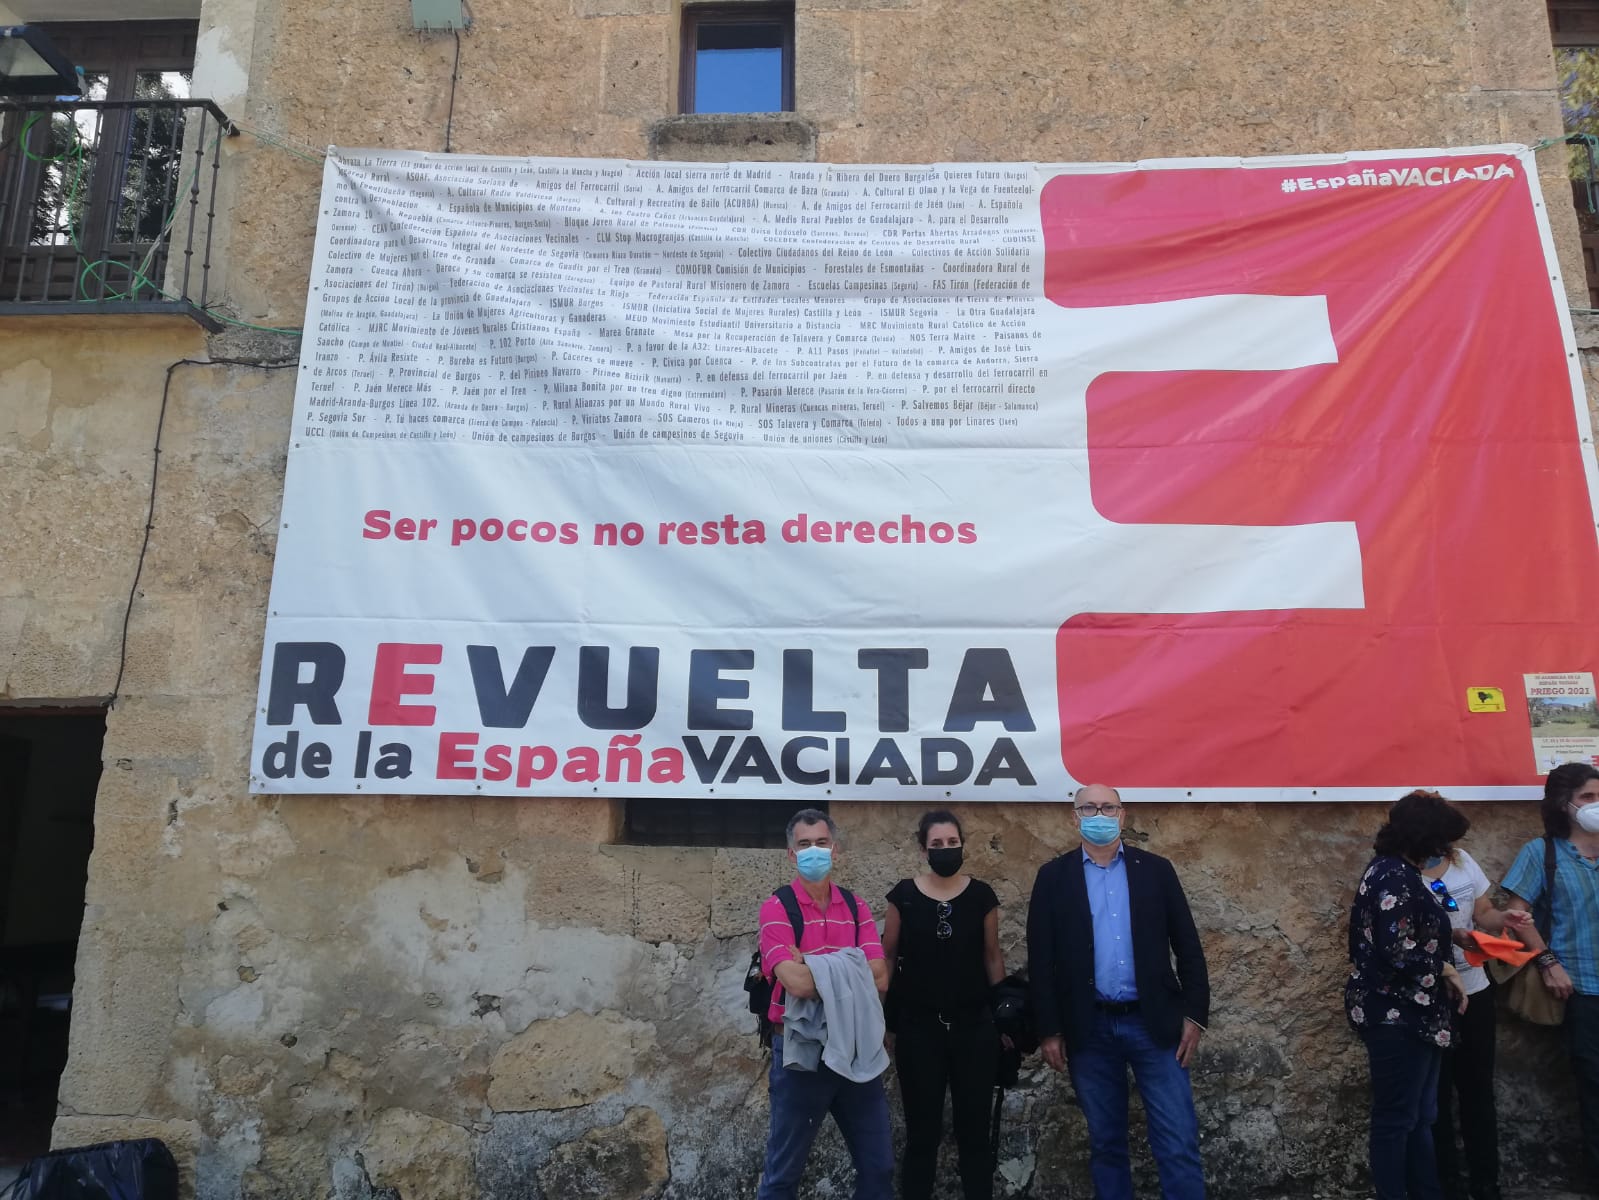 Casa rural con una bandera de la revuelta de la España vaciada y unas personas posando delante de la misma 